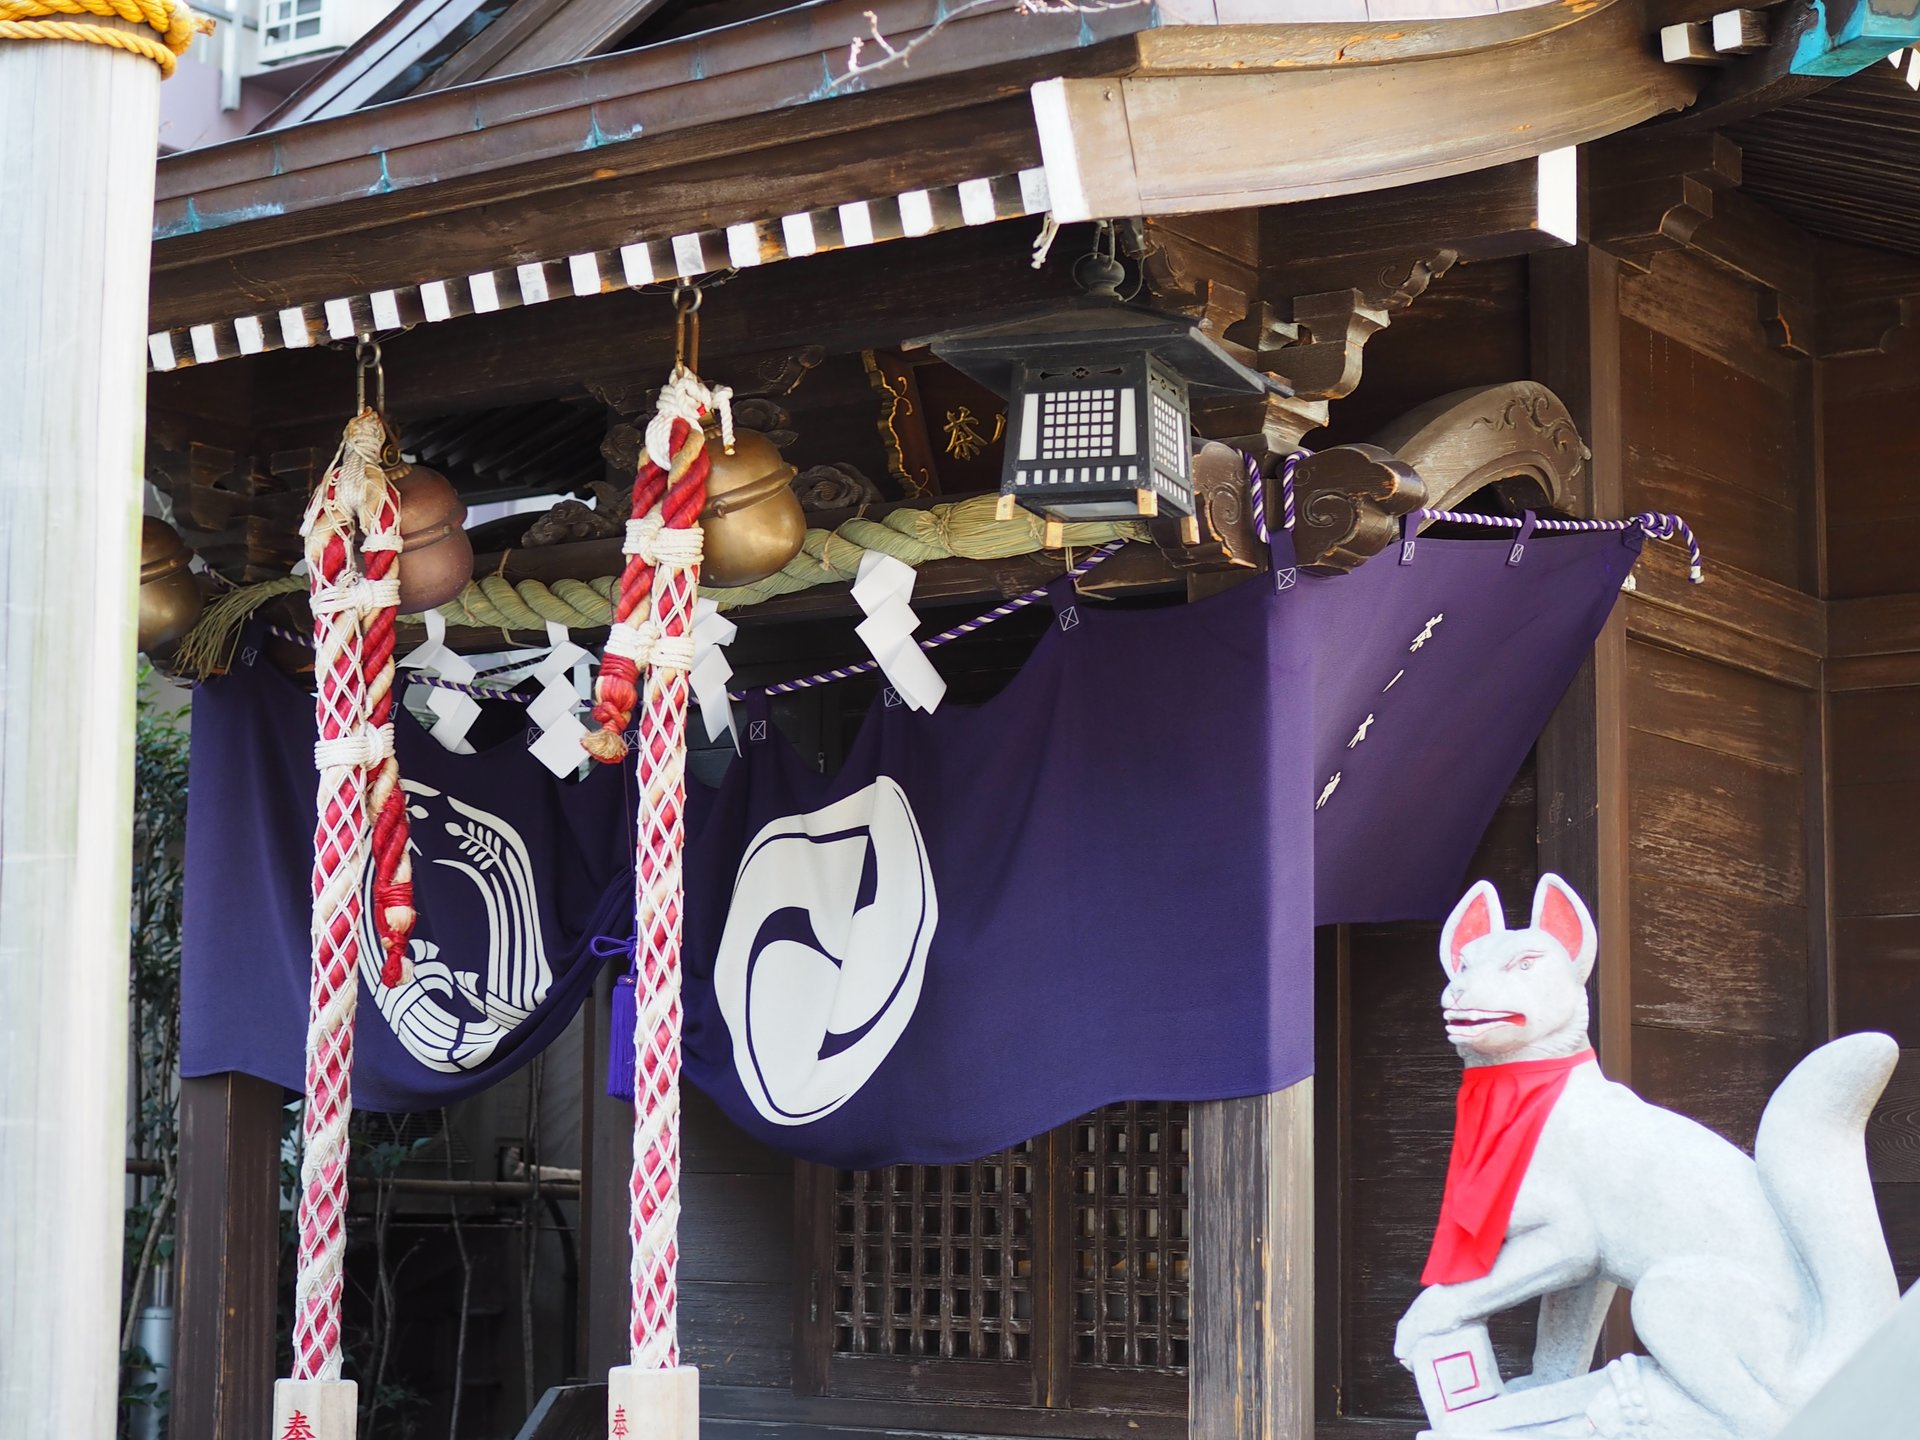 【日本橋七福神巡り】火伏の神、そして福徳の神布袋様を祀る「茶ノ木神社」